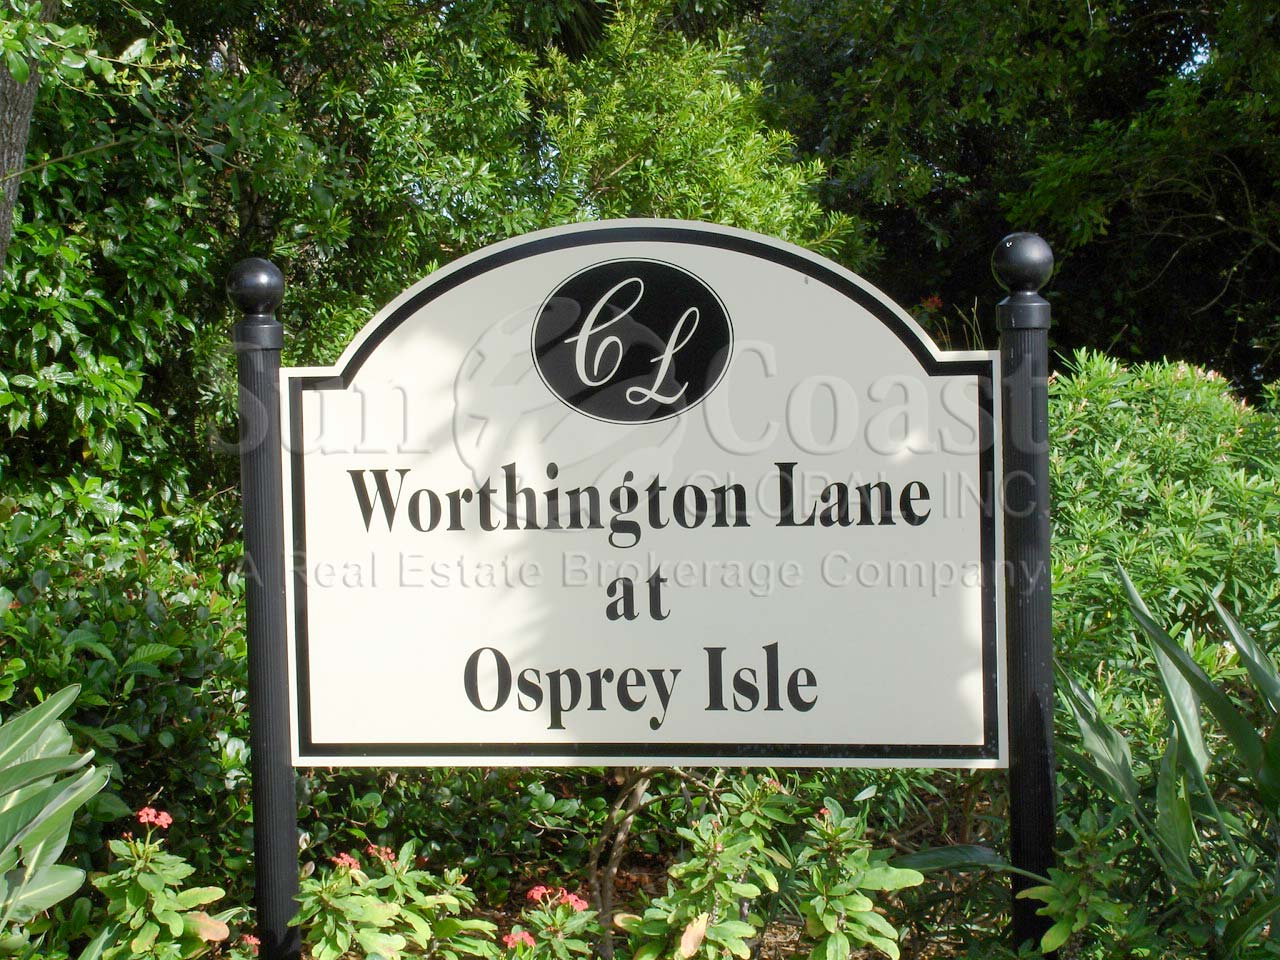 Osprey Isle sign